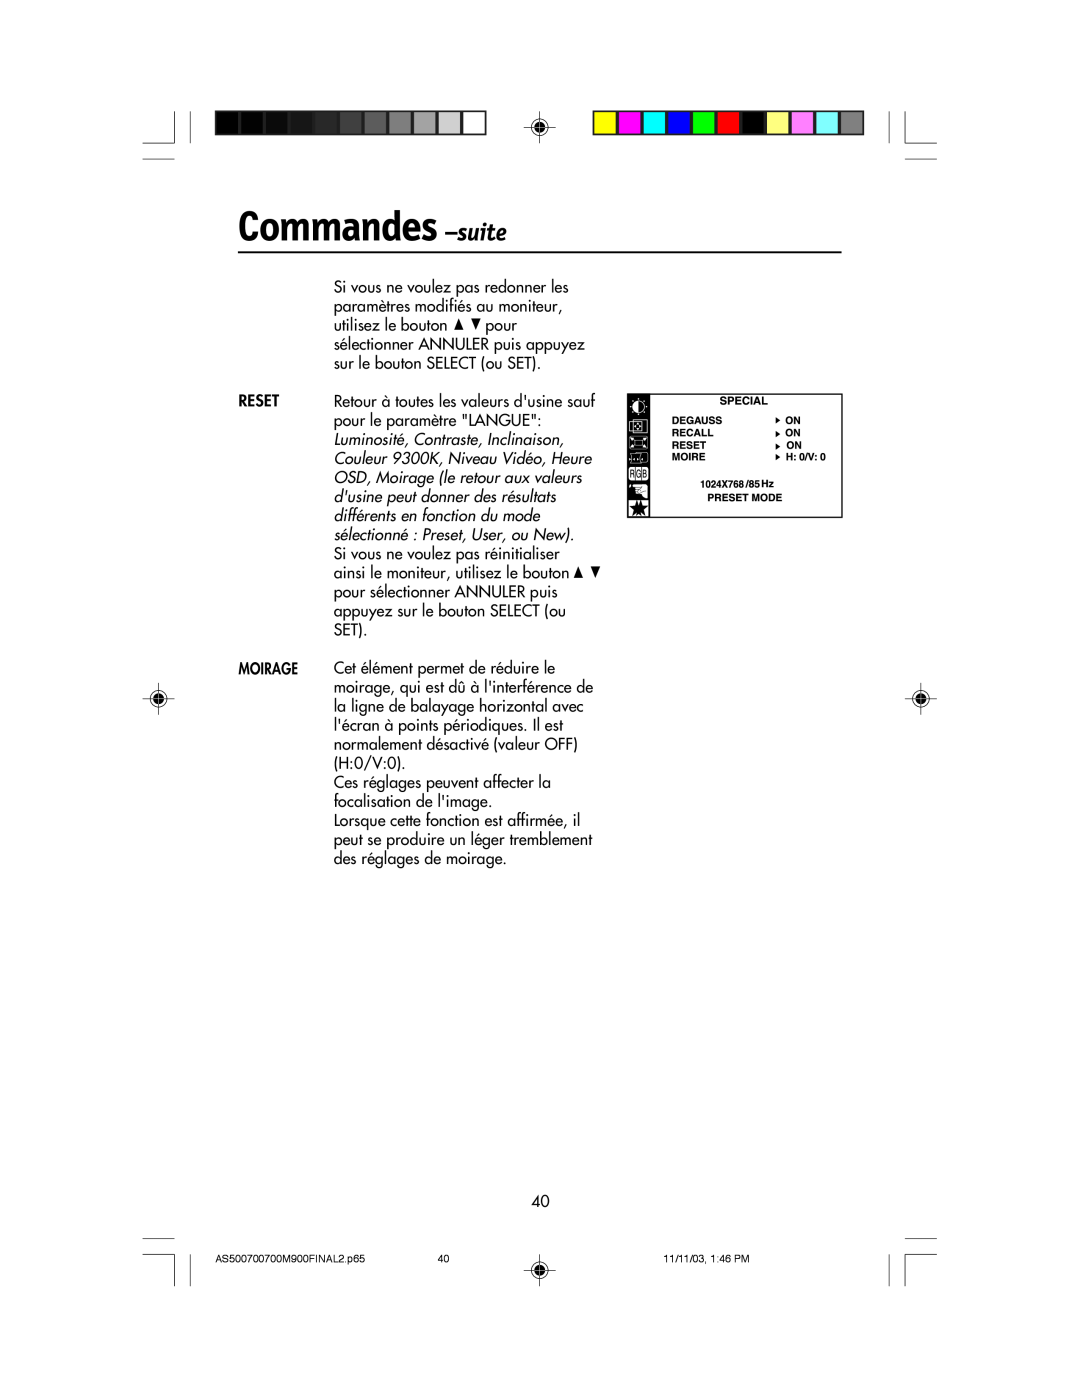 NEC 500, 700, 700M, 900 manual Commandes -suite, Reset Moirage 